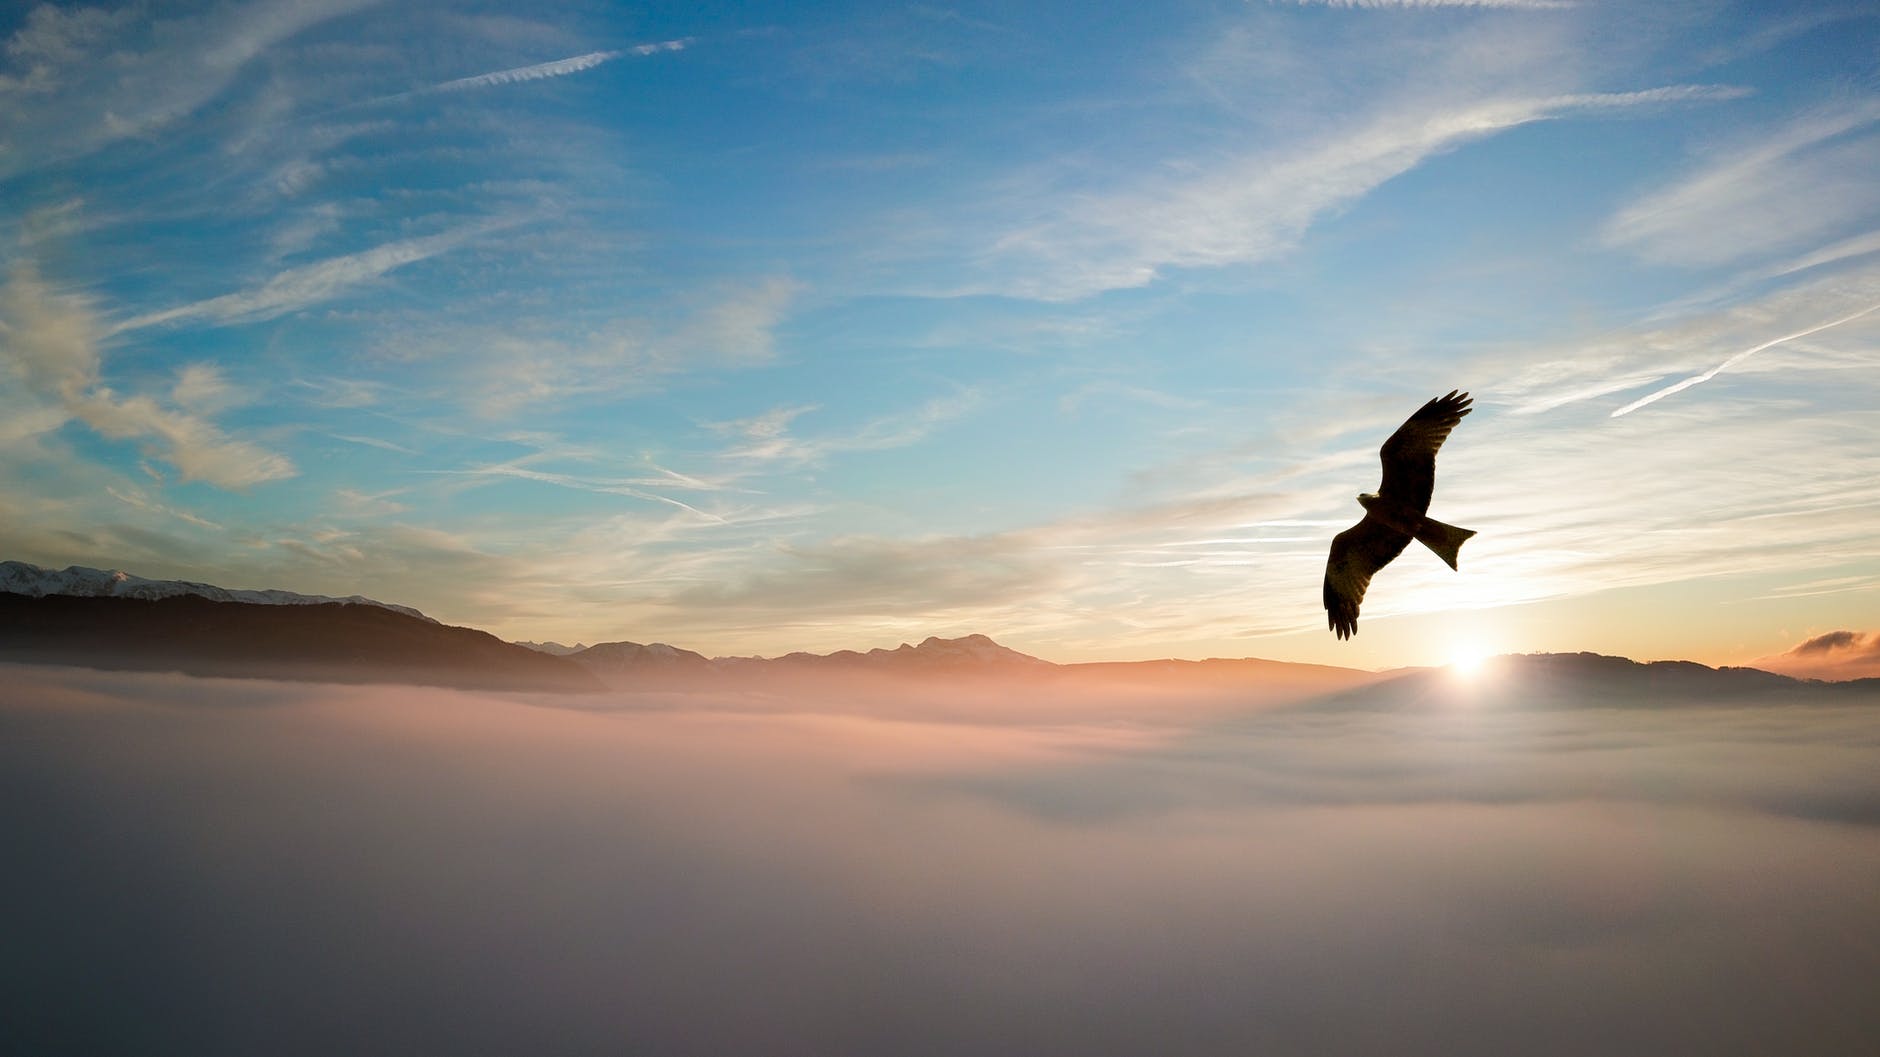 Mijenja li nas odluka ili vrijeme?

silhouette of bird above clouds